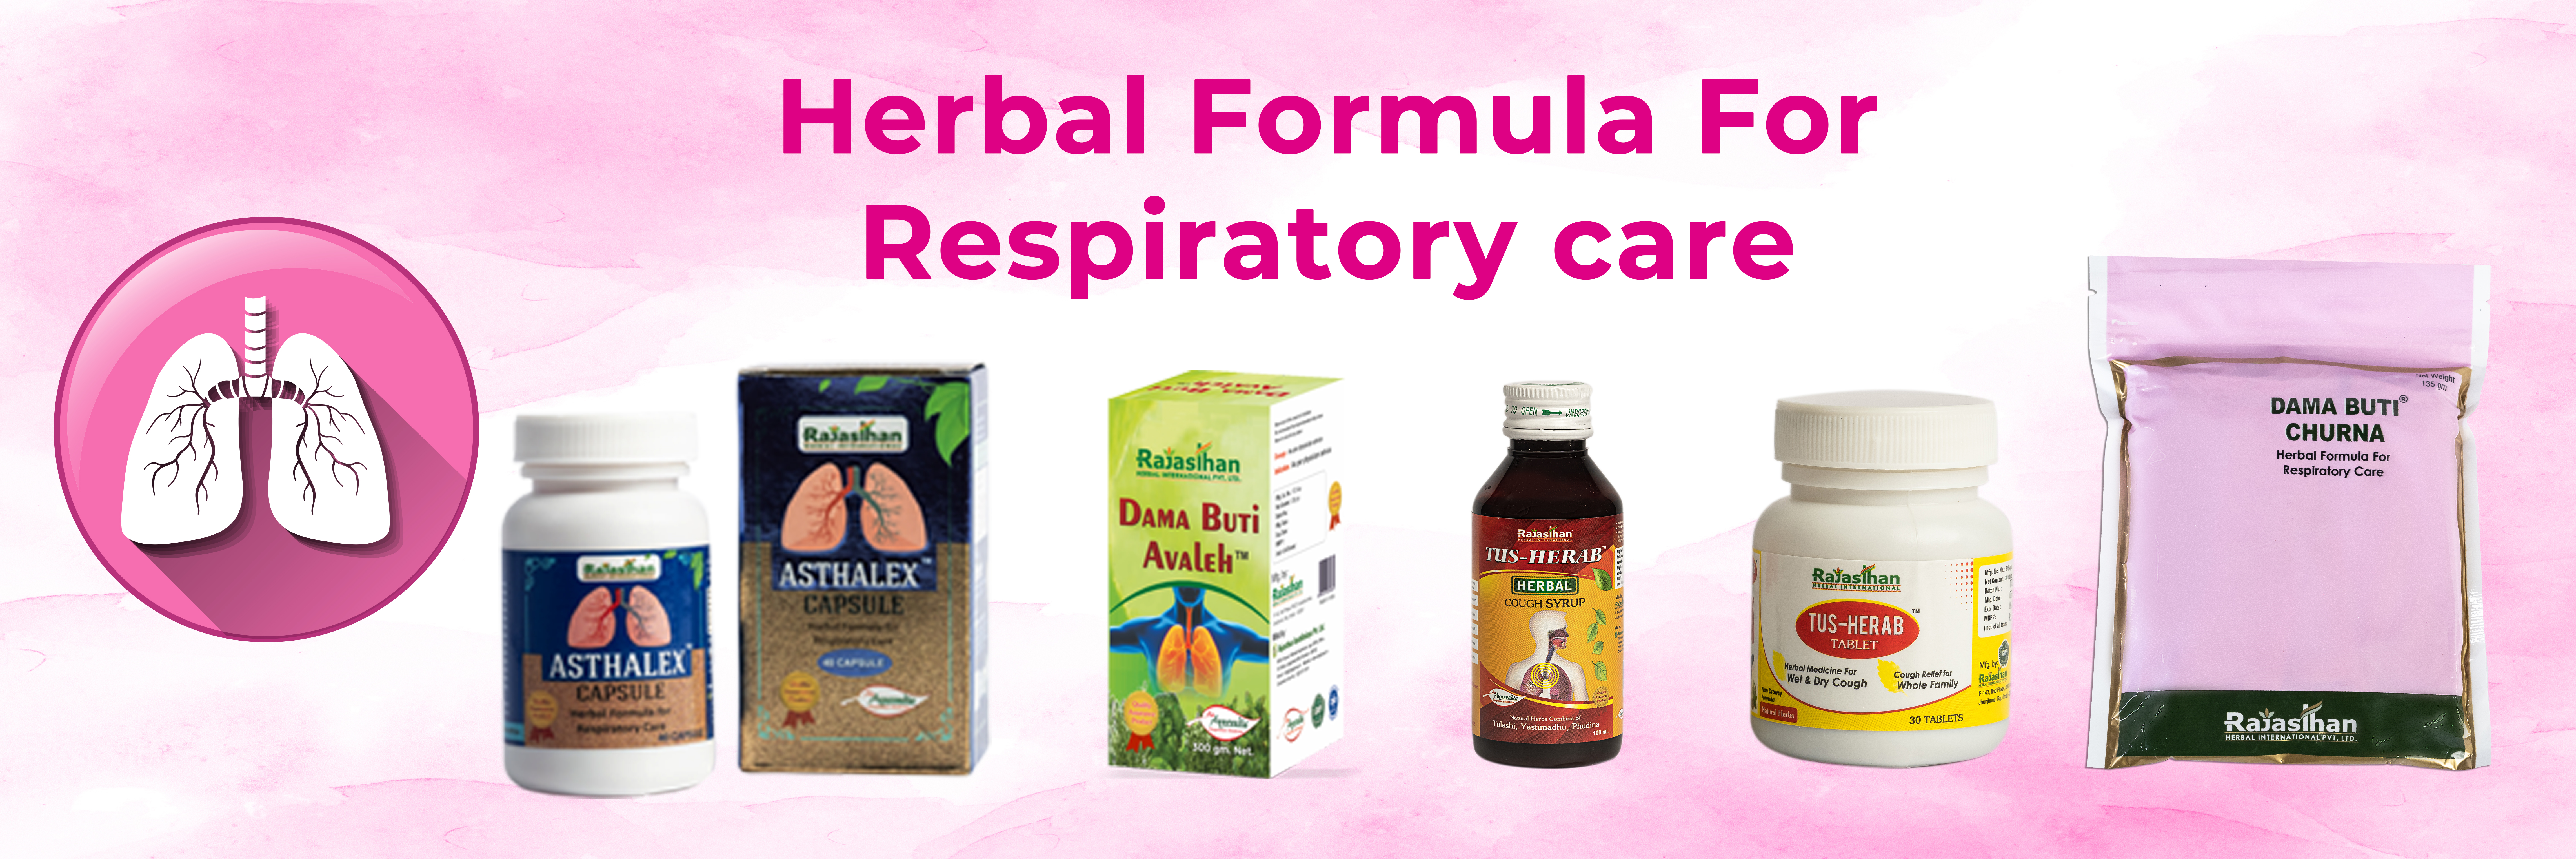 Herbal Formula For Respiratory Care V2